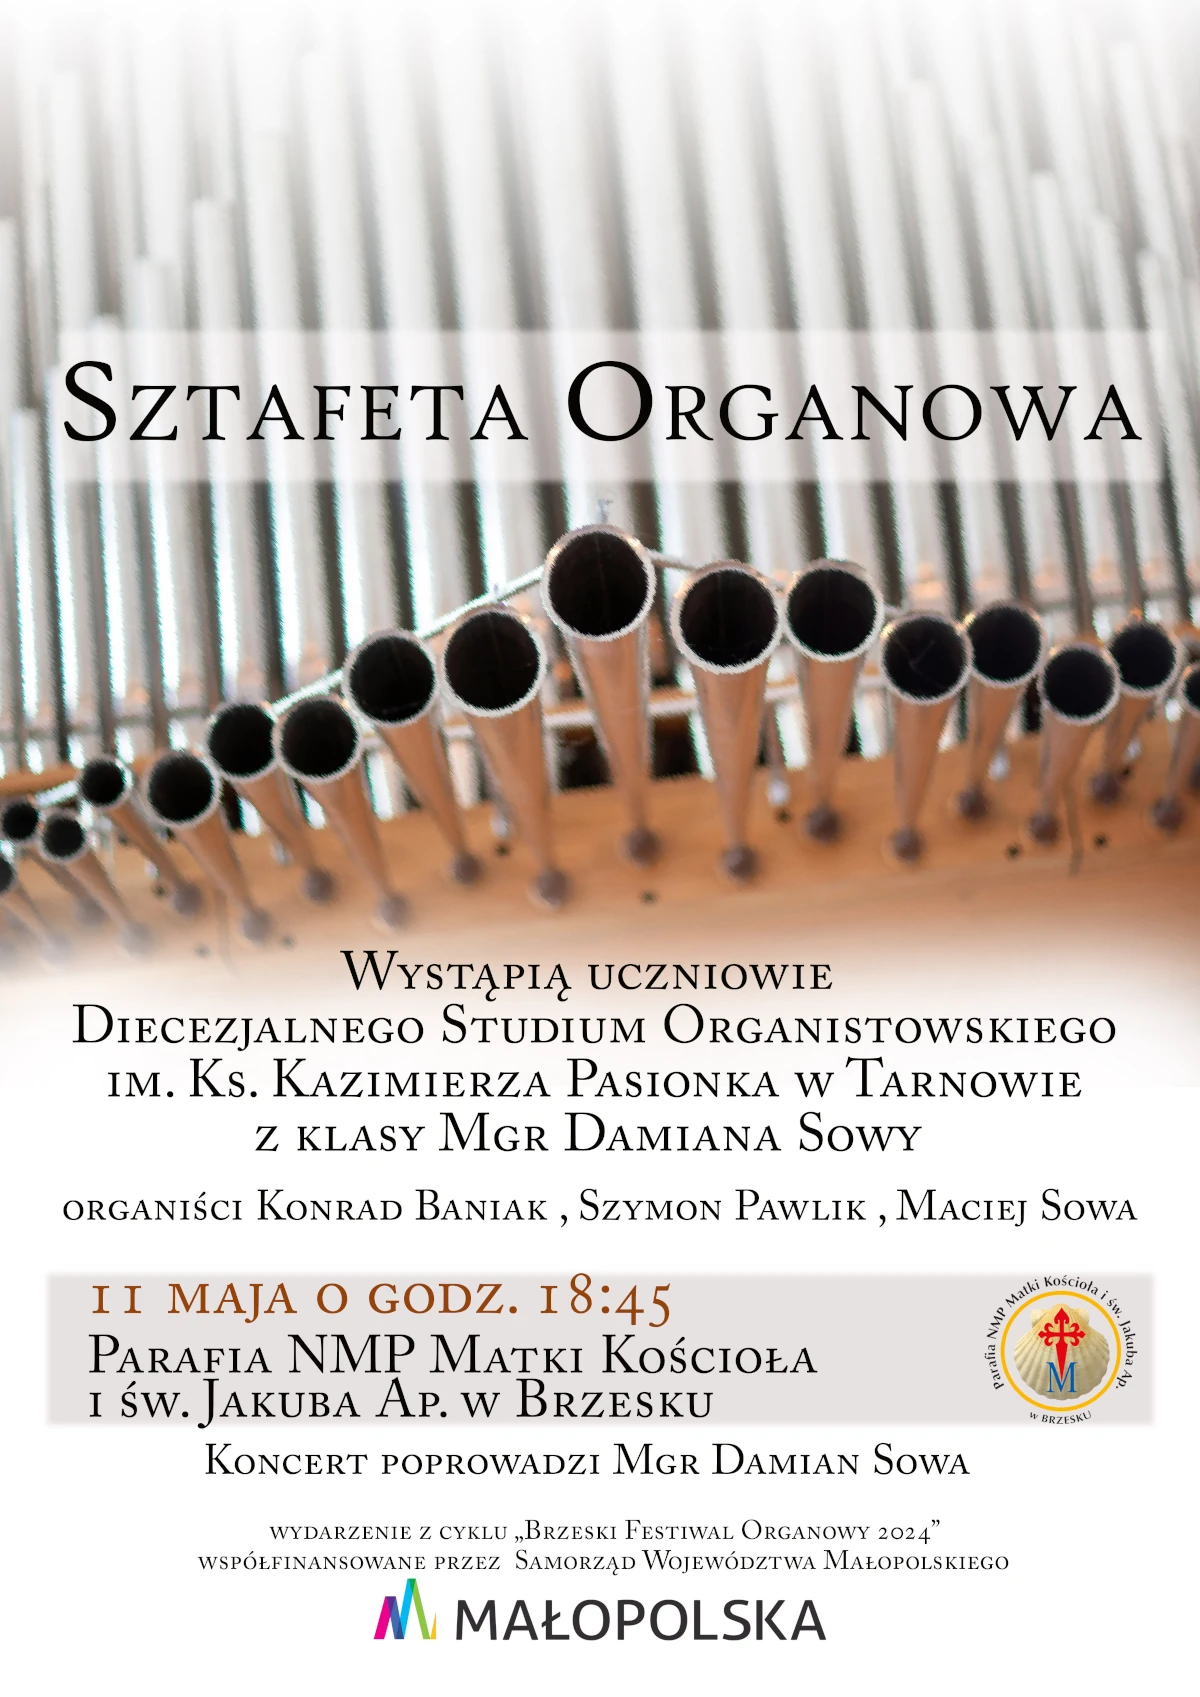 Sztafeta Organowa - plakat